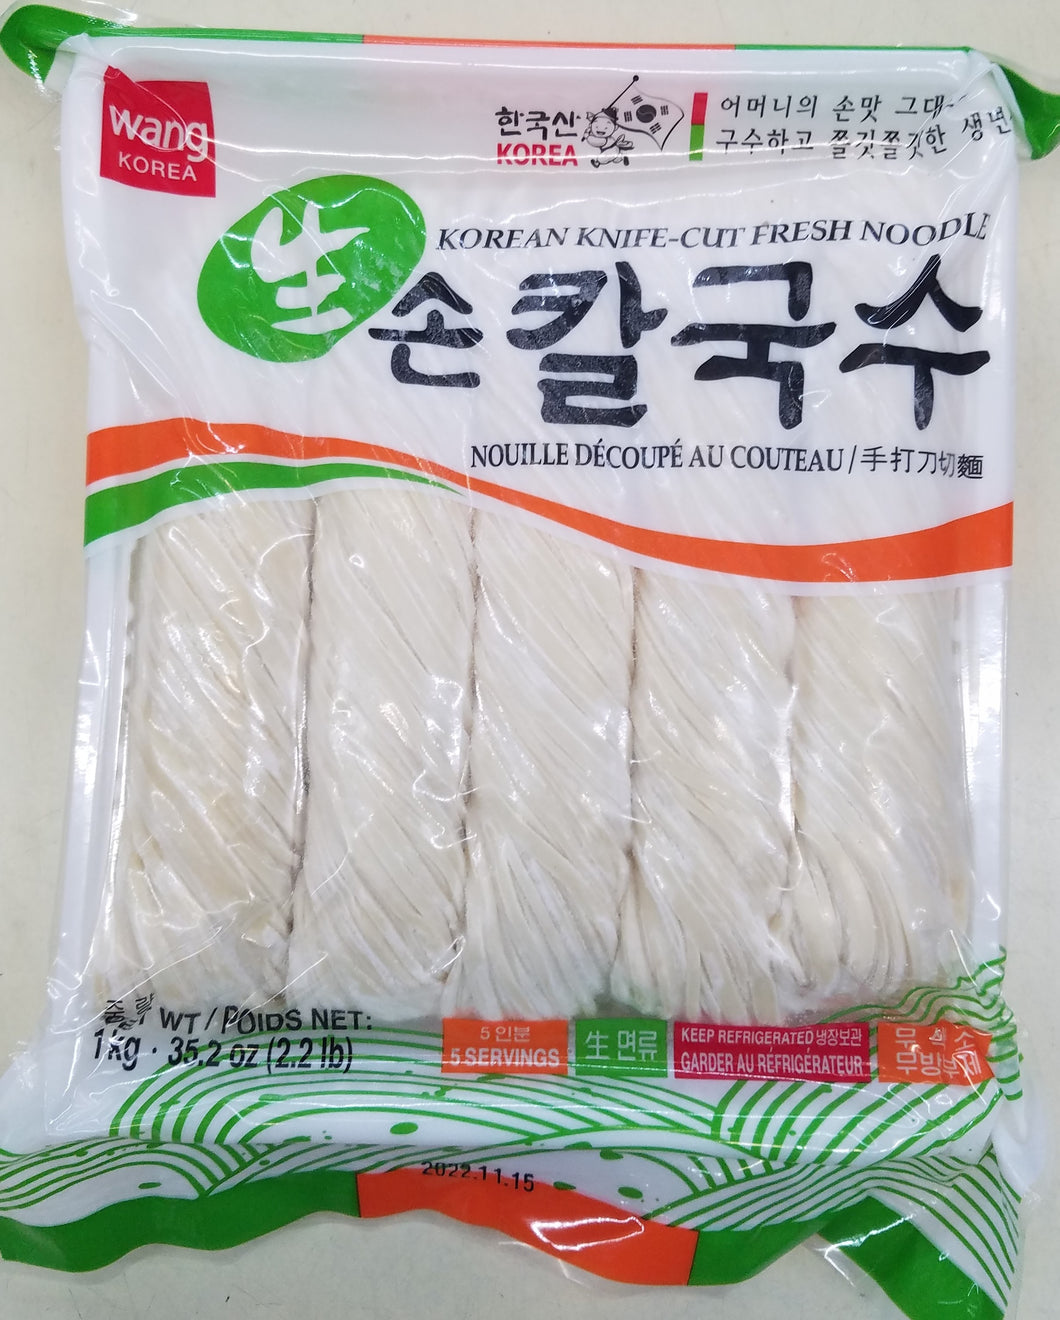 Wang Korean Knife-Cut Fresh Noodle